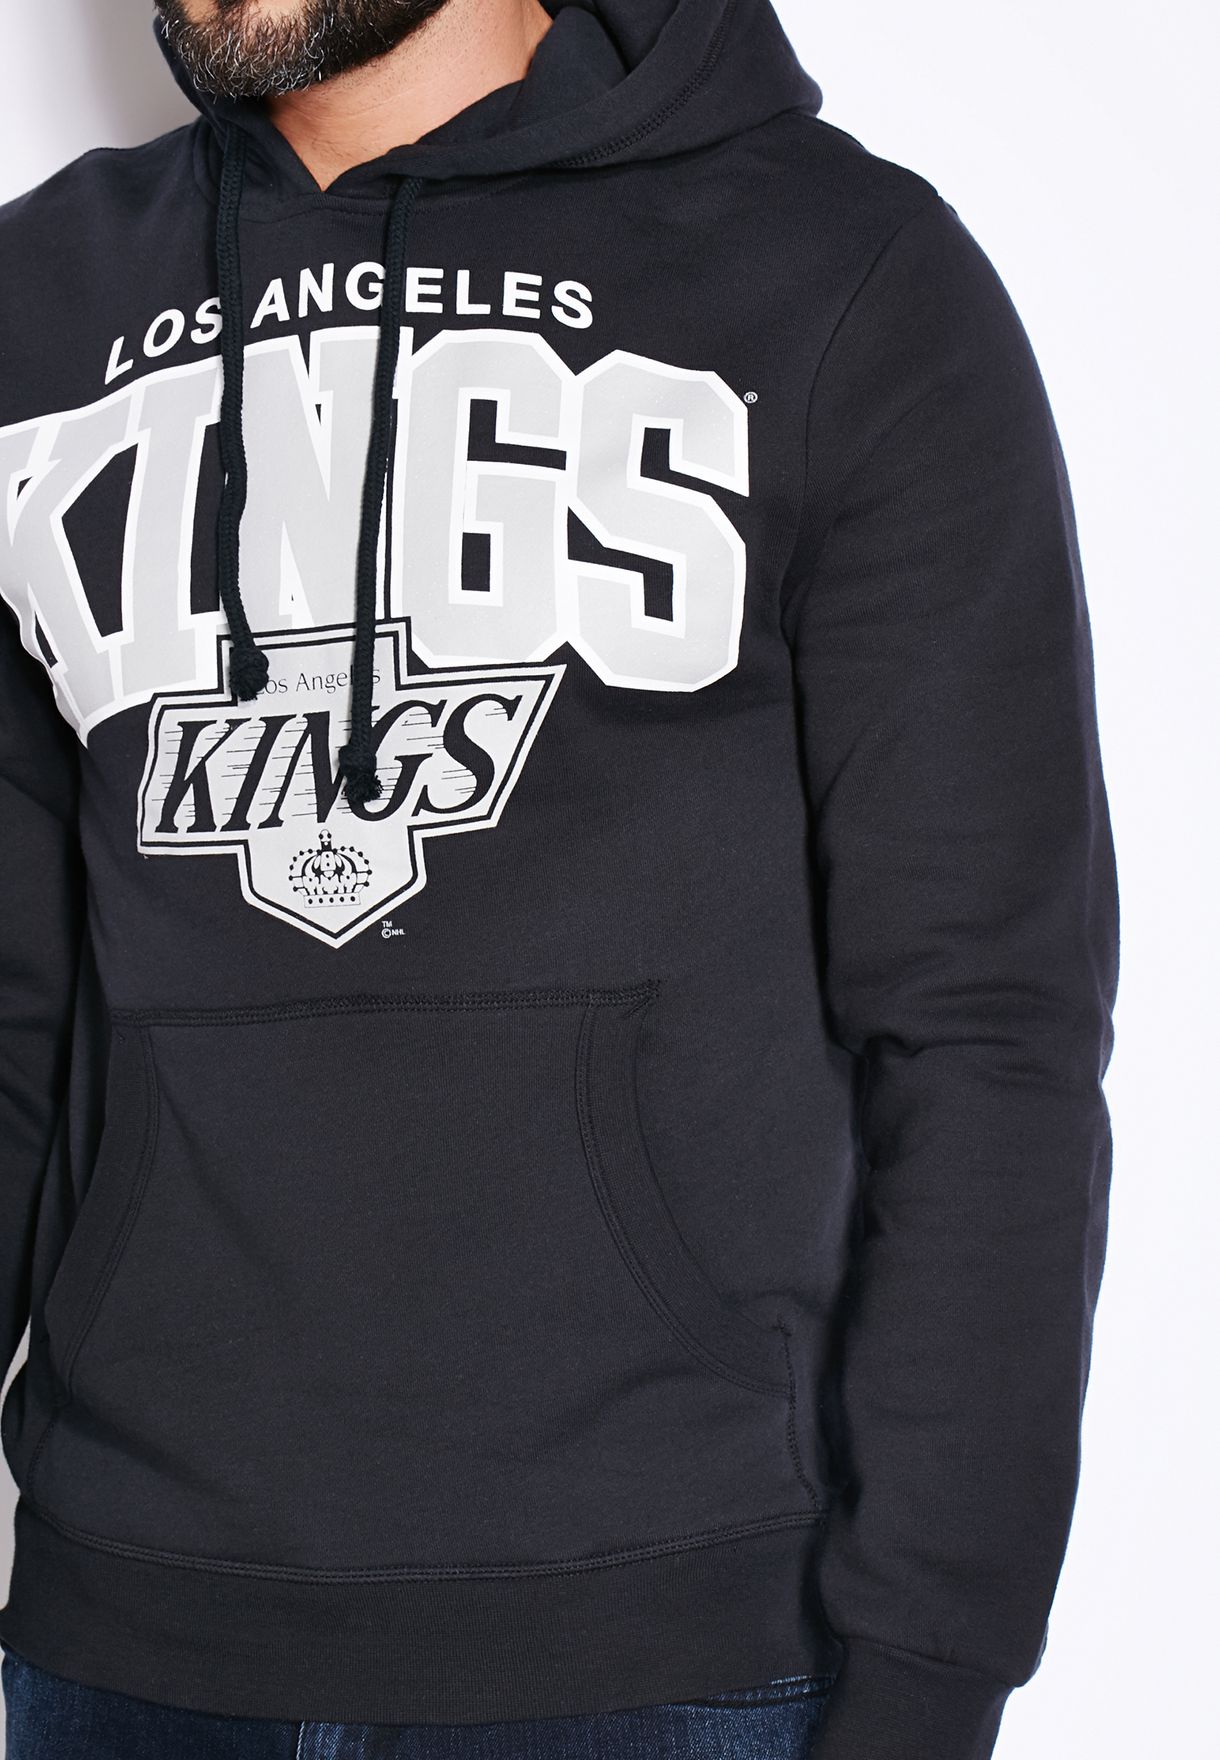 la kings reebok hoodie